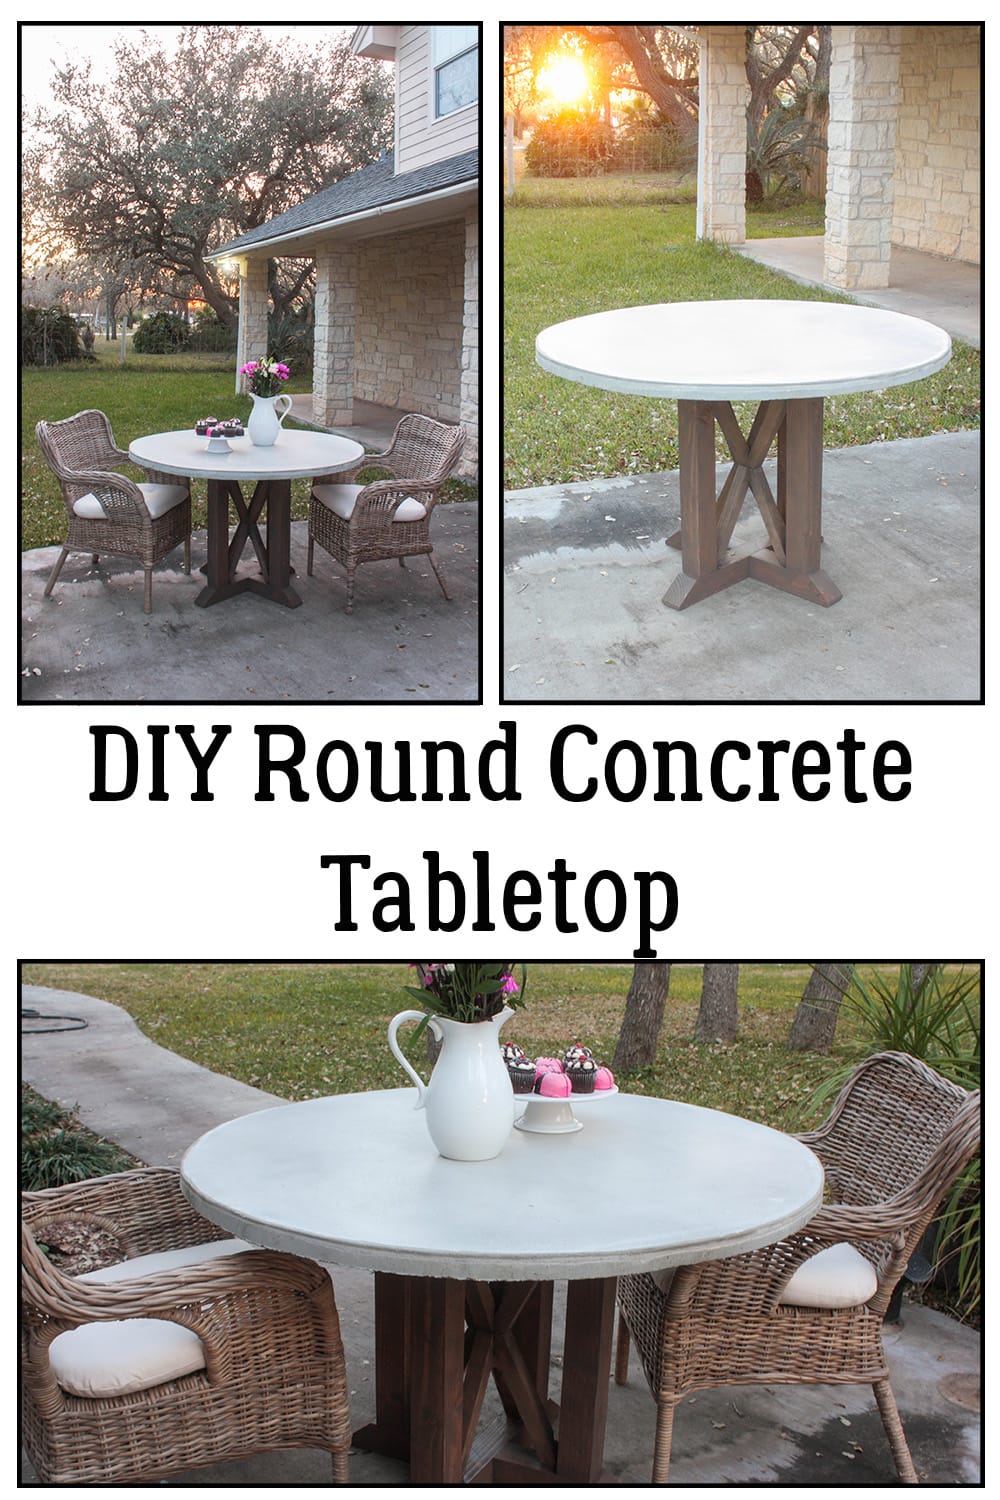 DIY Round Concrete Tabletop